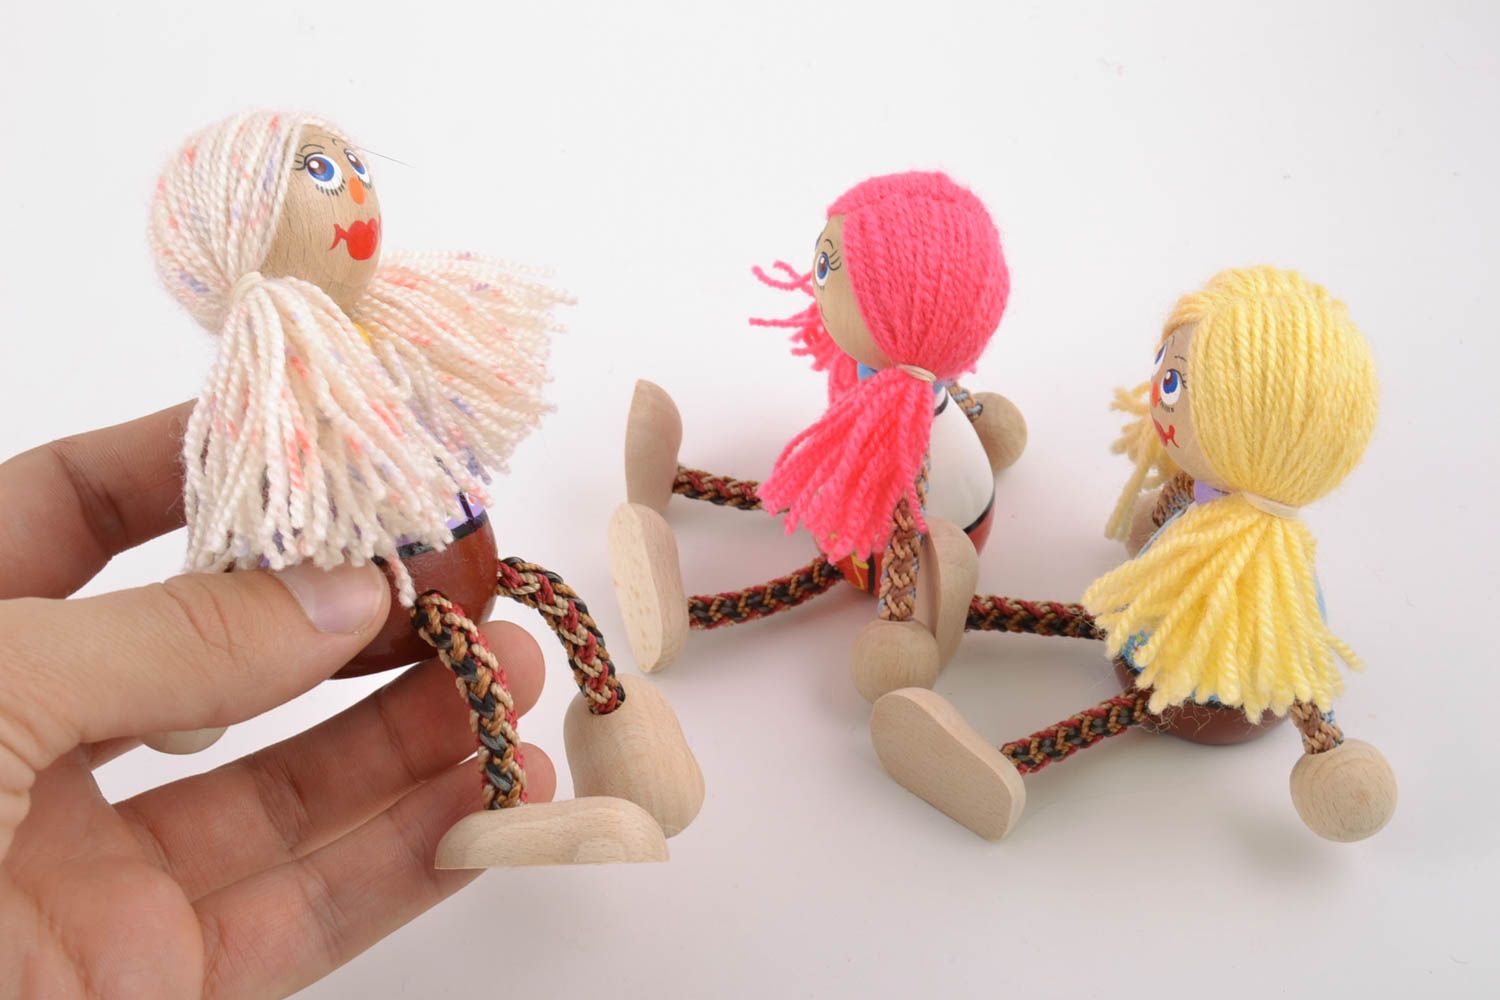 Комплект расписных деревянных эко игрушек подружки 3 штуки ручной работы фото 2